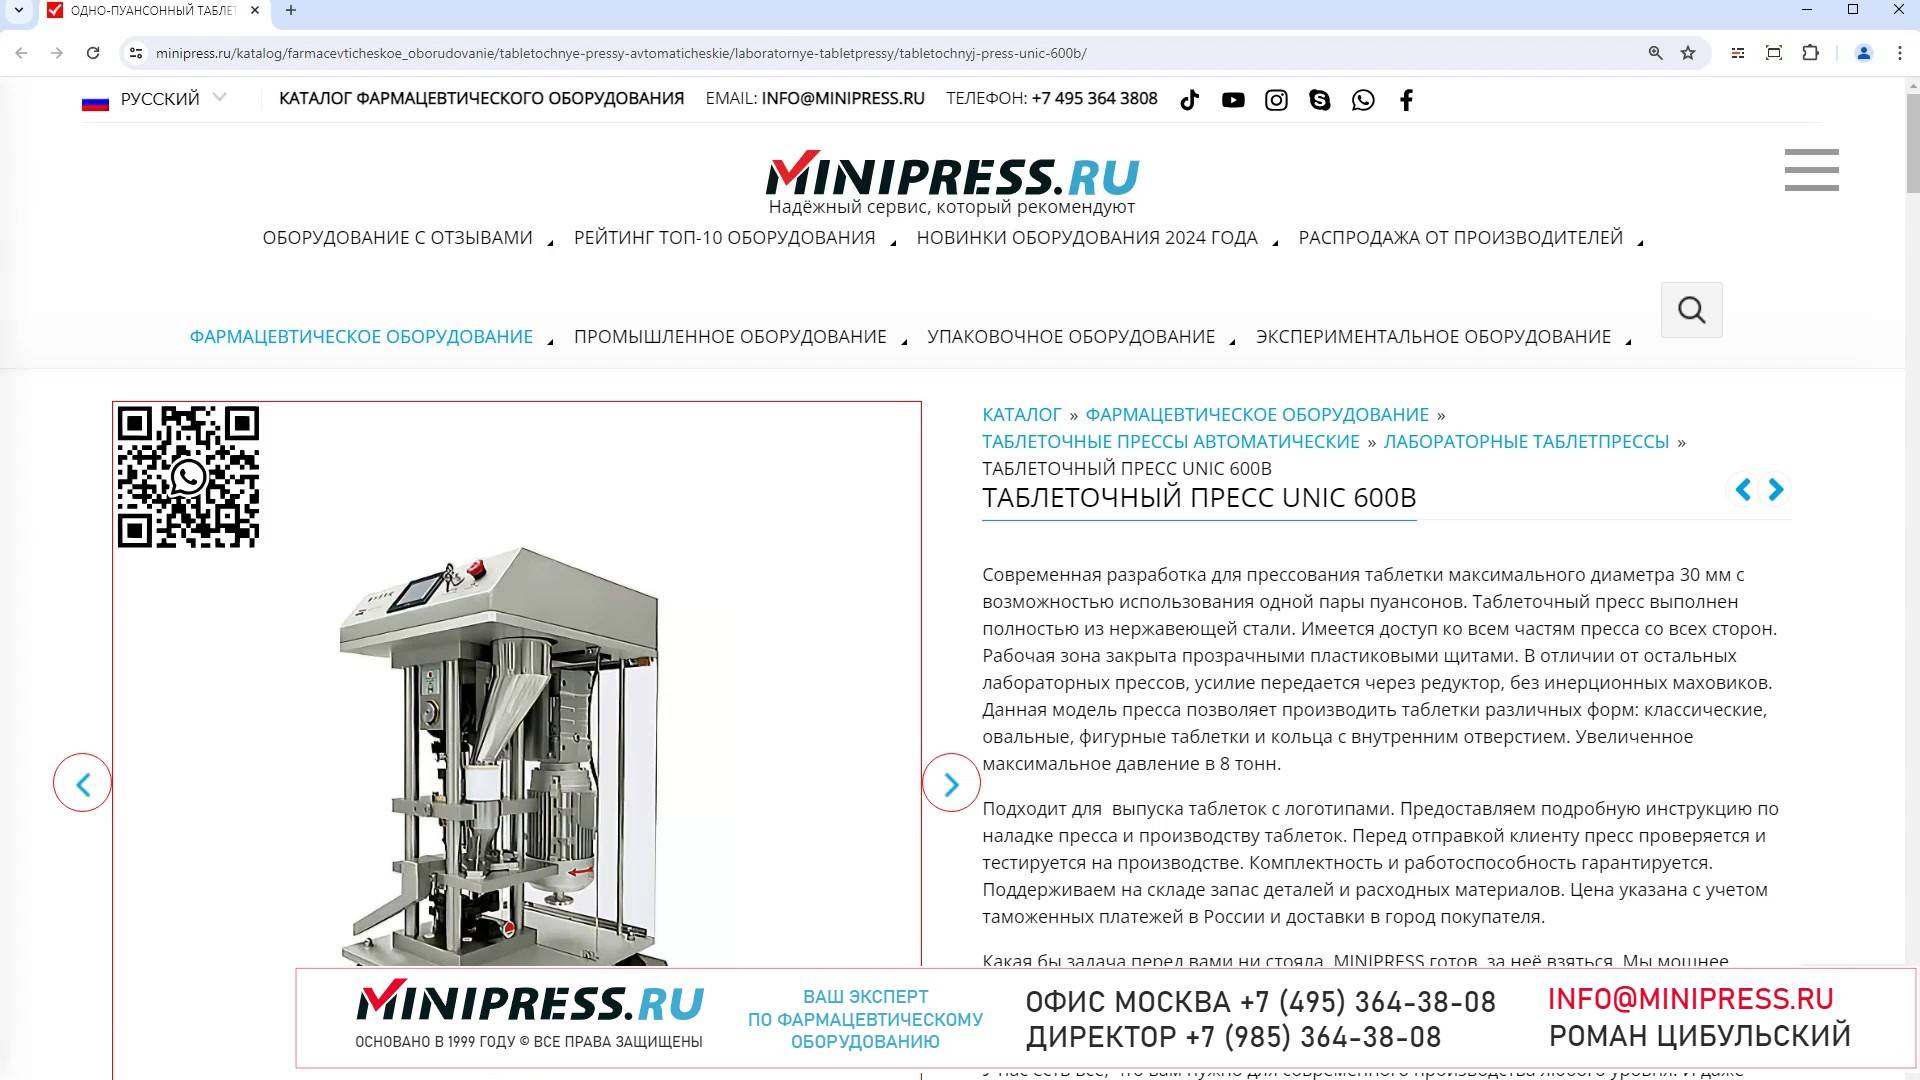 Minipress.ru Таблеточный пресс UNIC 600B